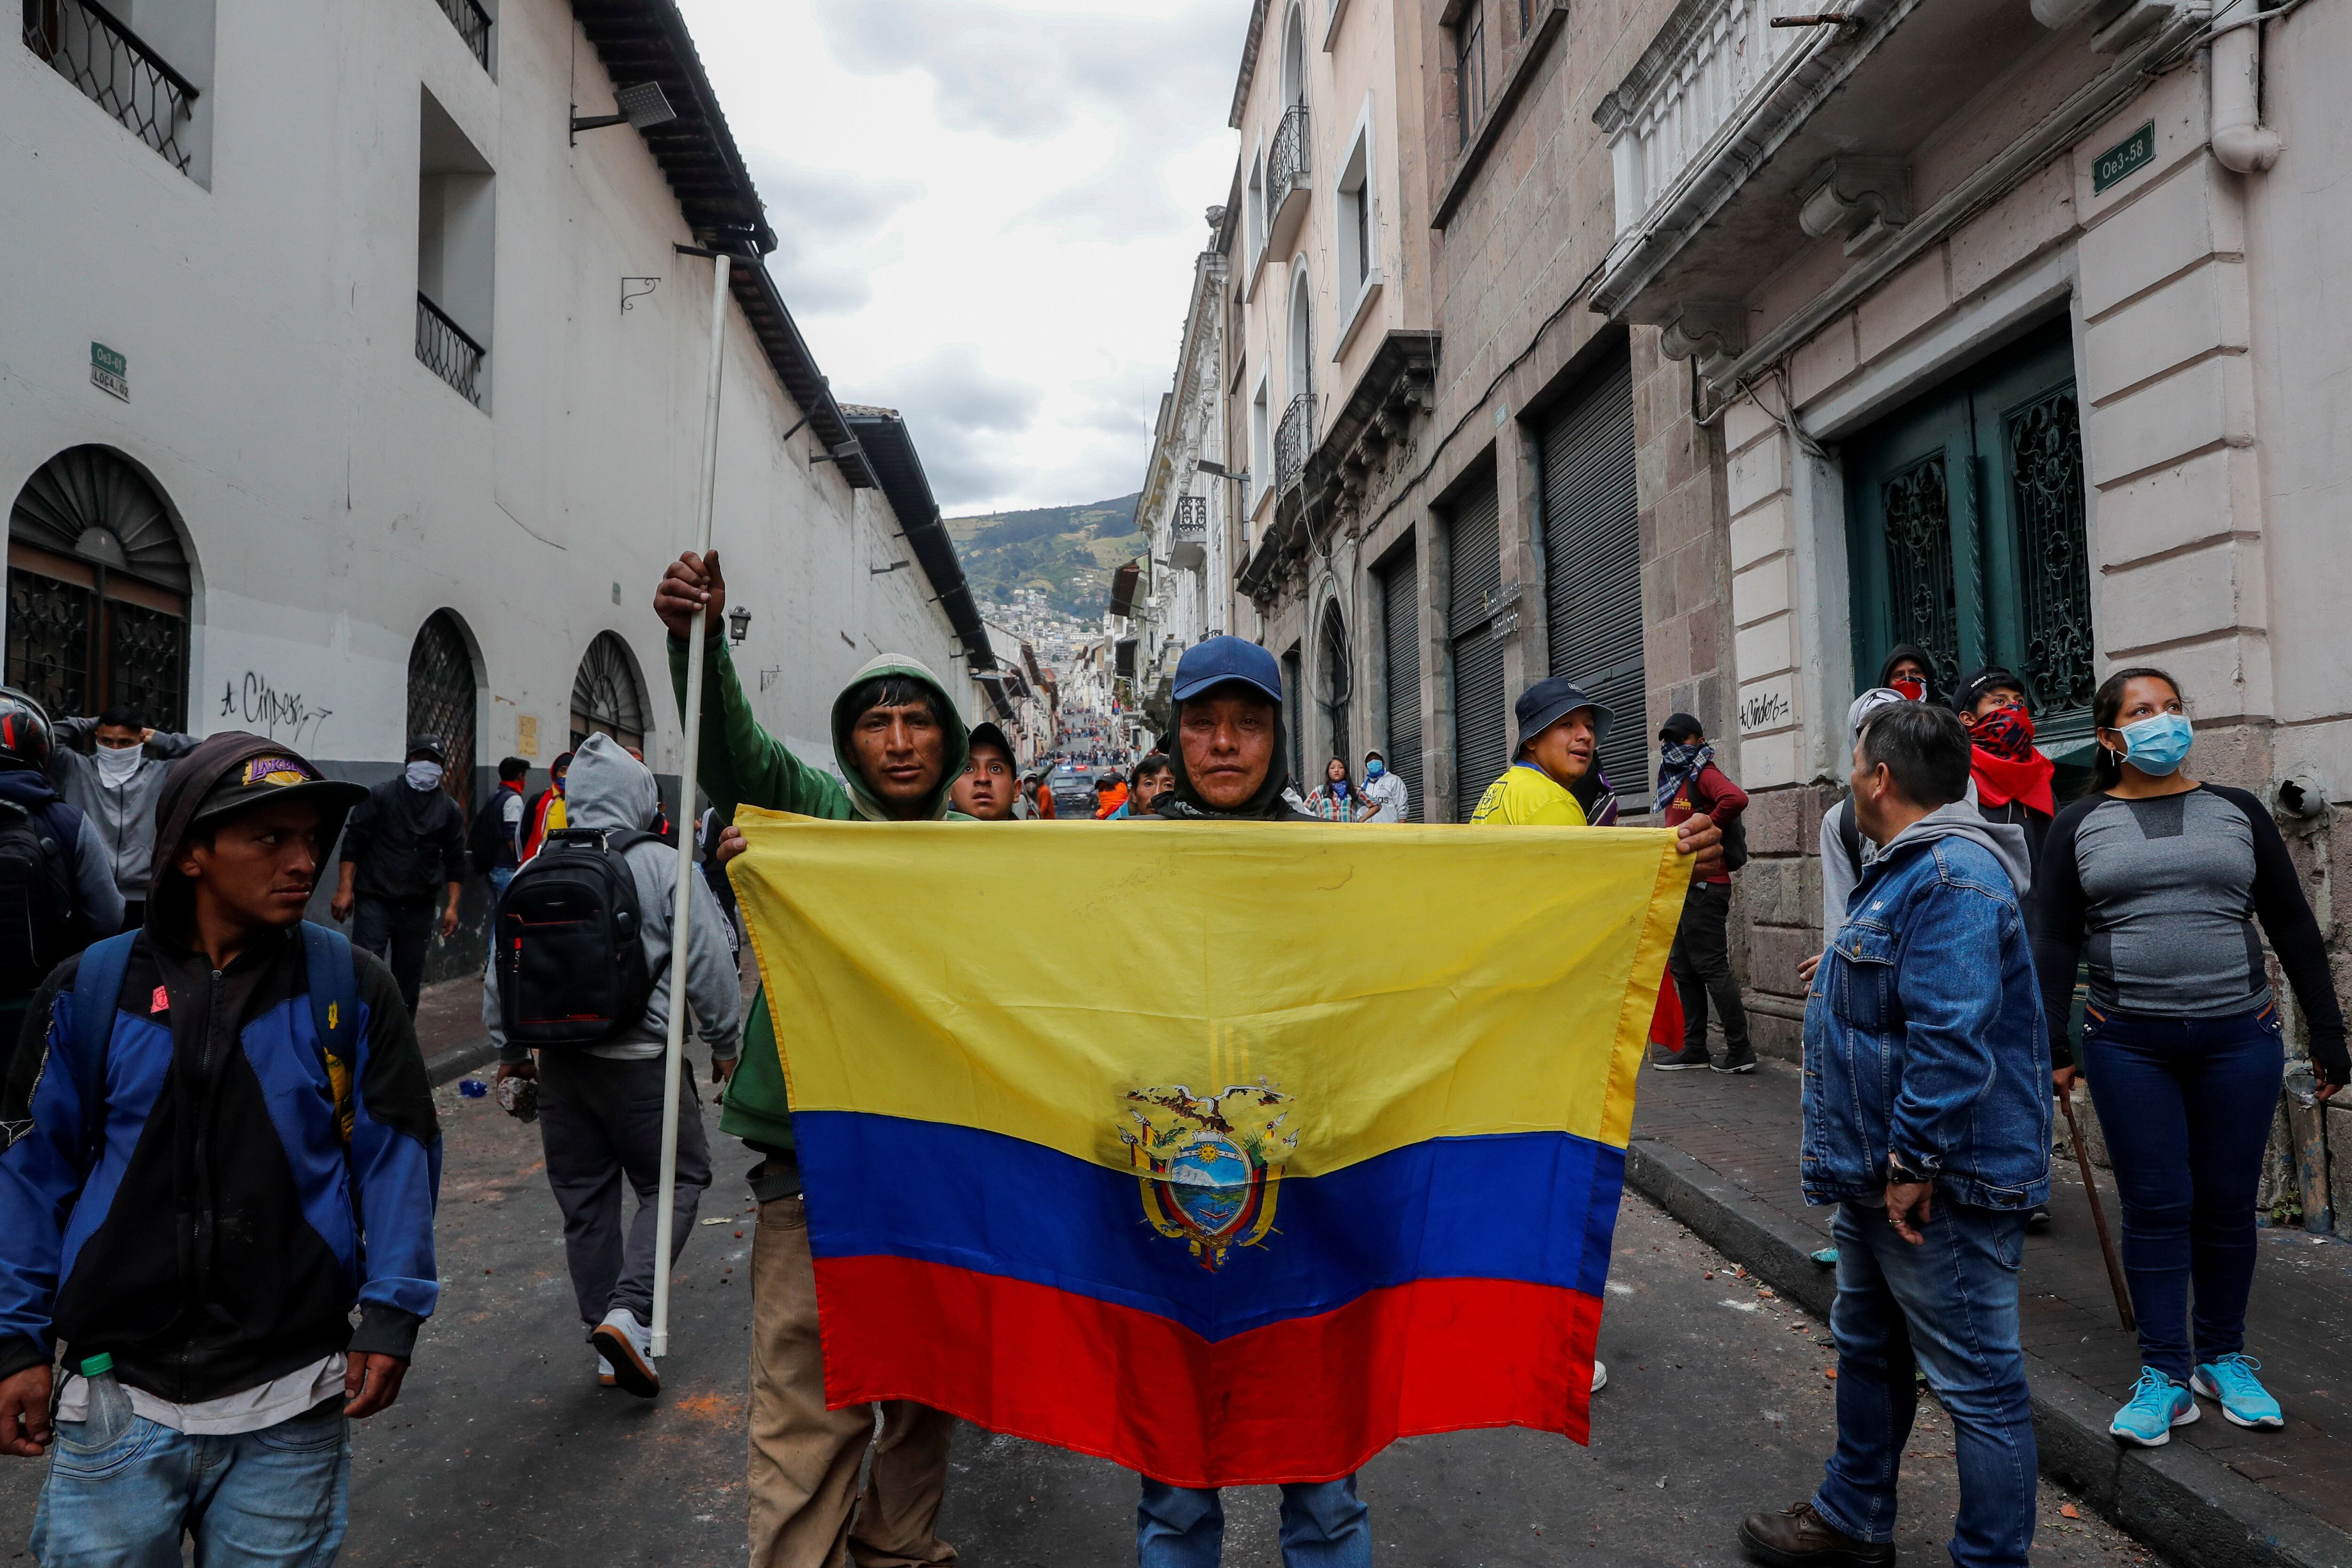 Un manifestante cubierto con una bandera ecuatoriana se para frente a un vehículo blindado durante una protesta contra las medidas de austeridad del presidente de Ecuador, Lenín Moreno, en Quito, Ecuador, el 9 de octubre de 2019. (REUTERS/Ivan Alvarado)